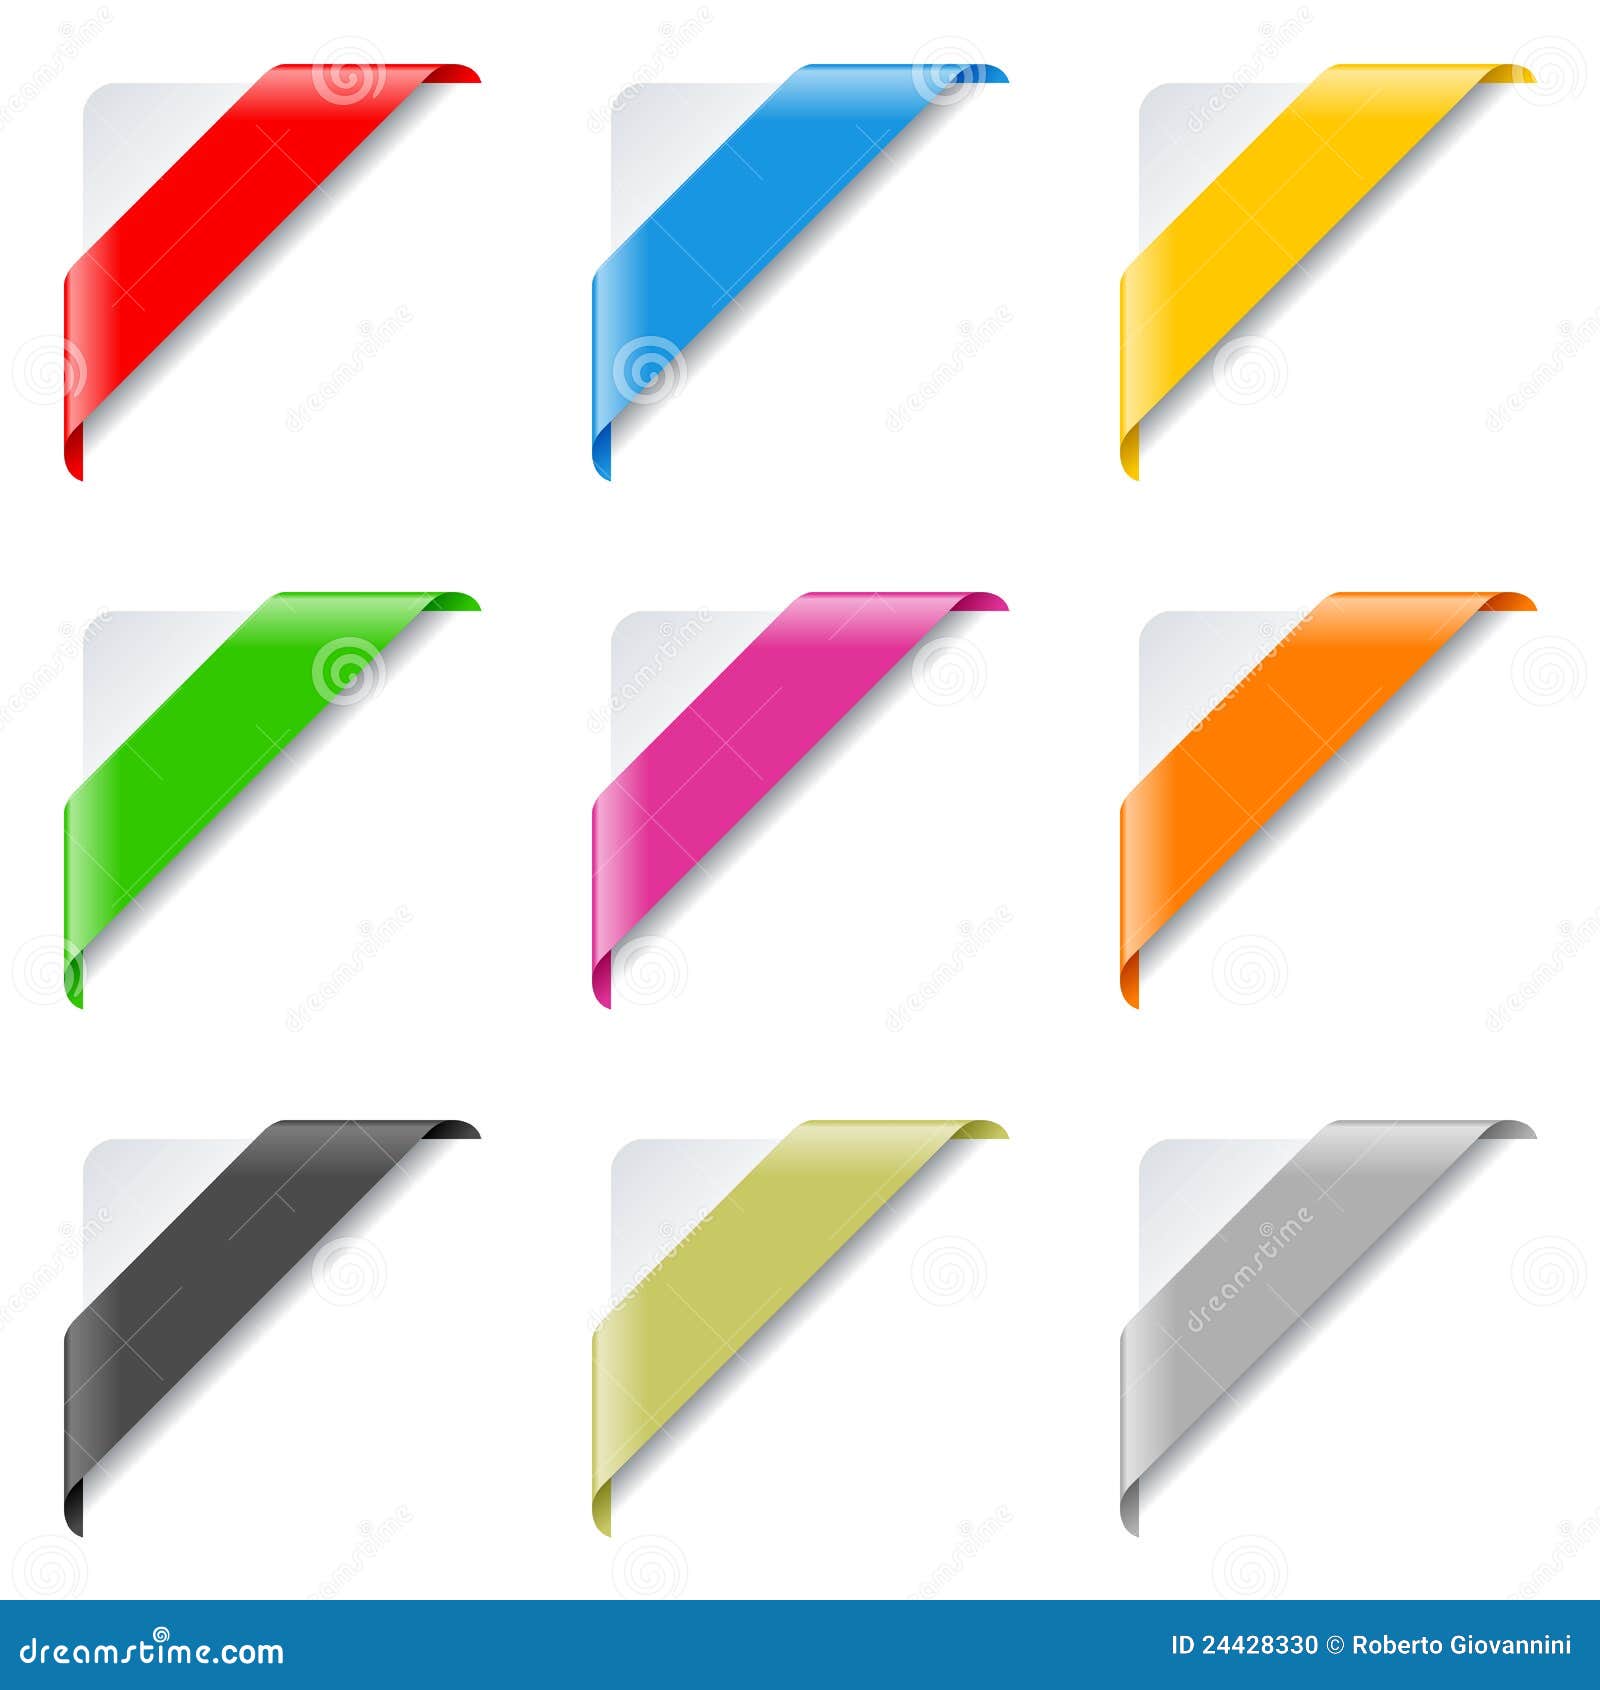 colorful corner ribbons set